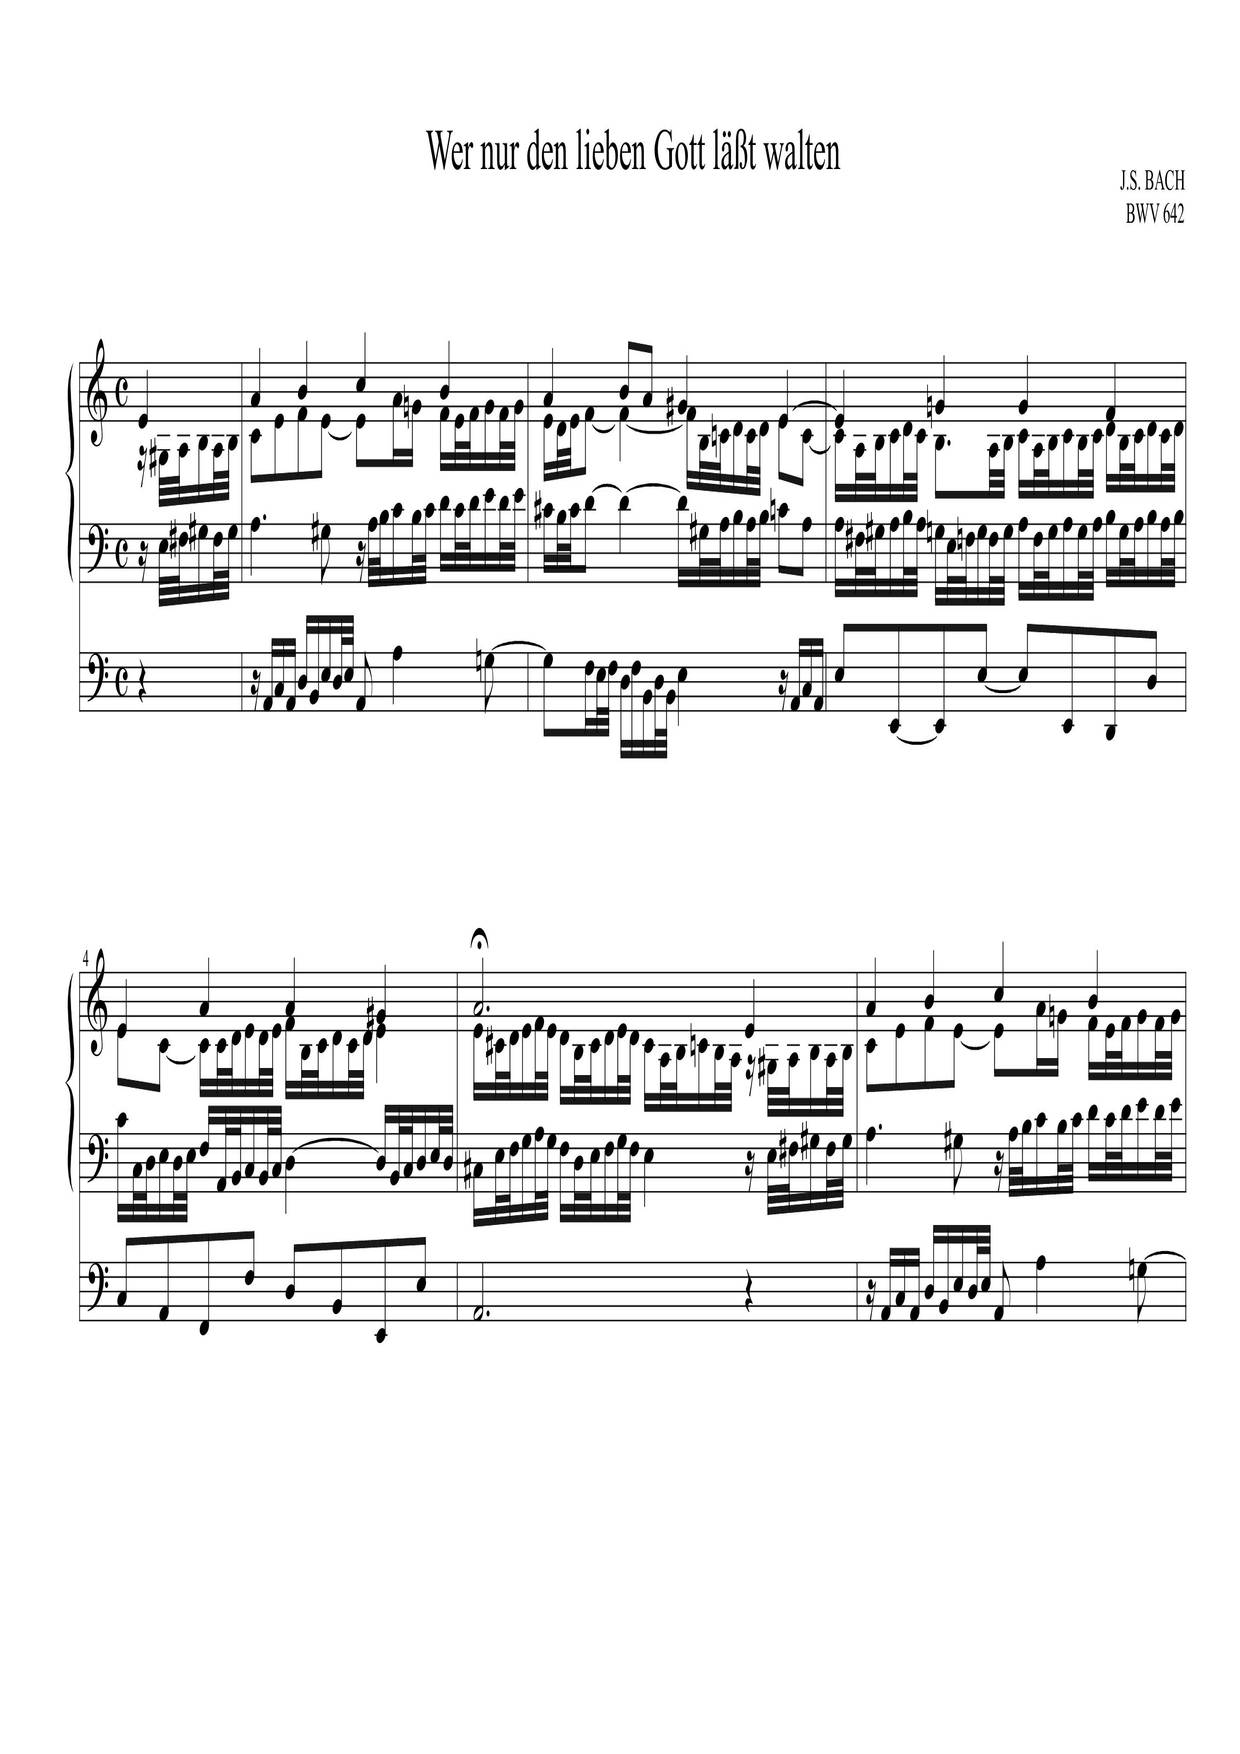 Chorale Prelude 'Wer Nur Den Lieben Gott', BWV 642 Score